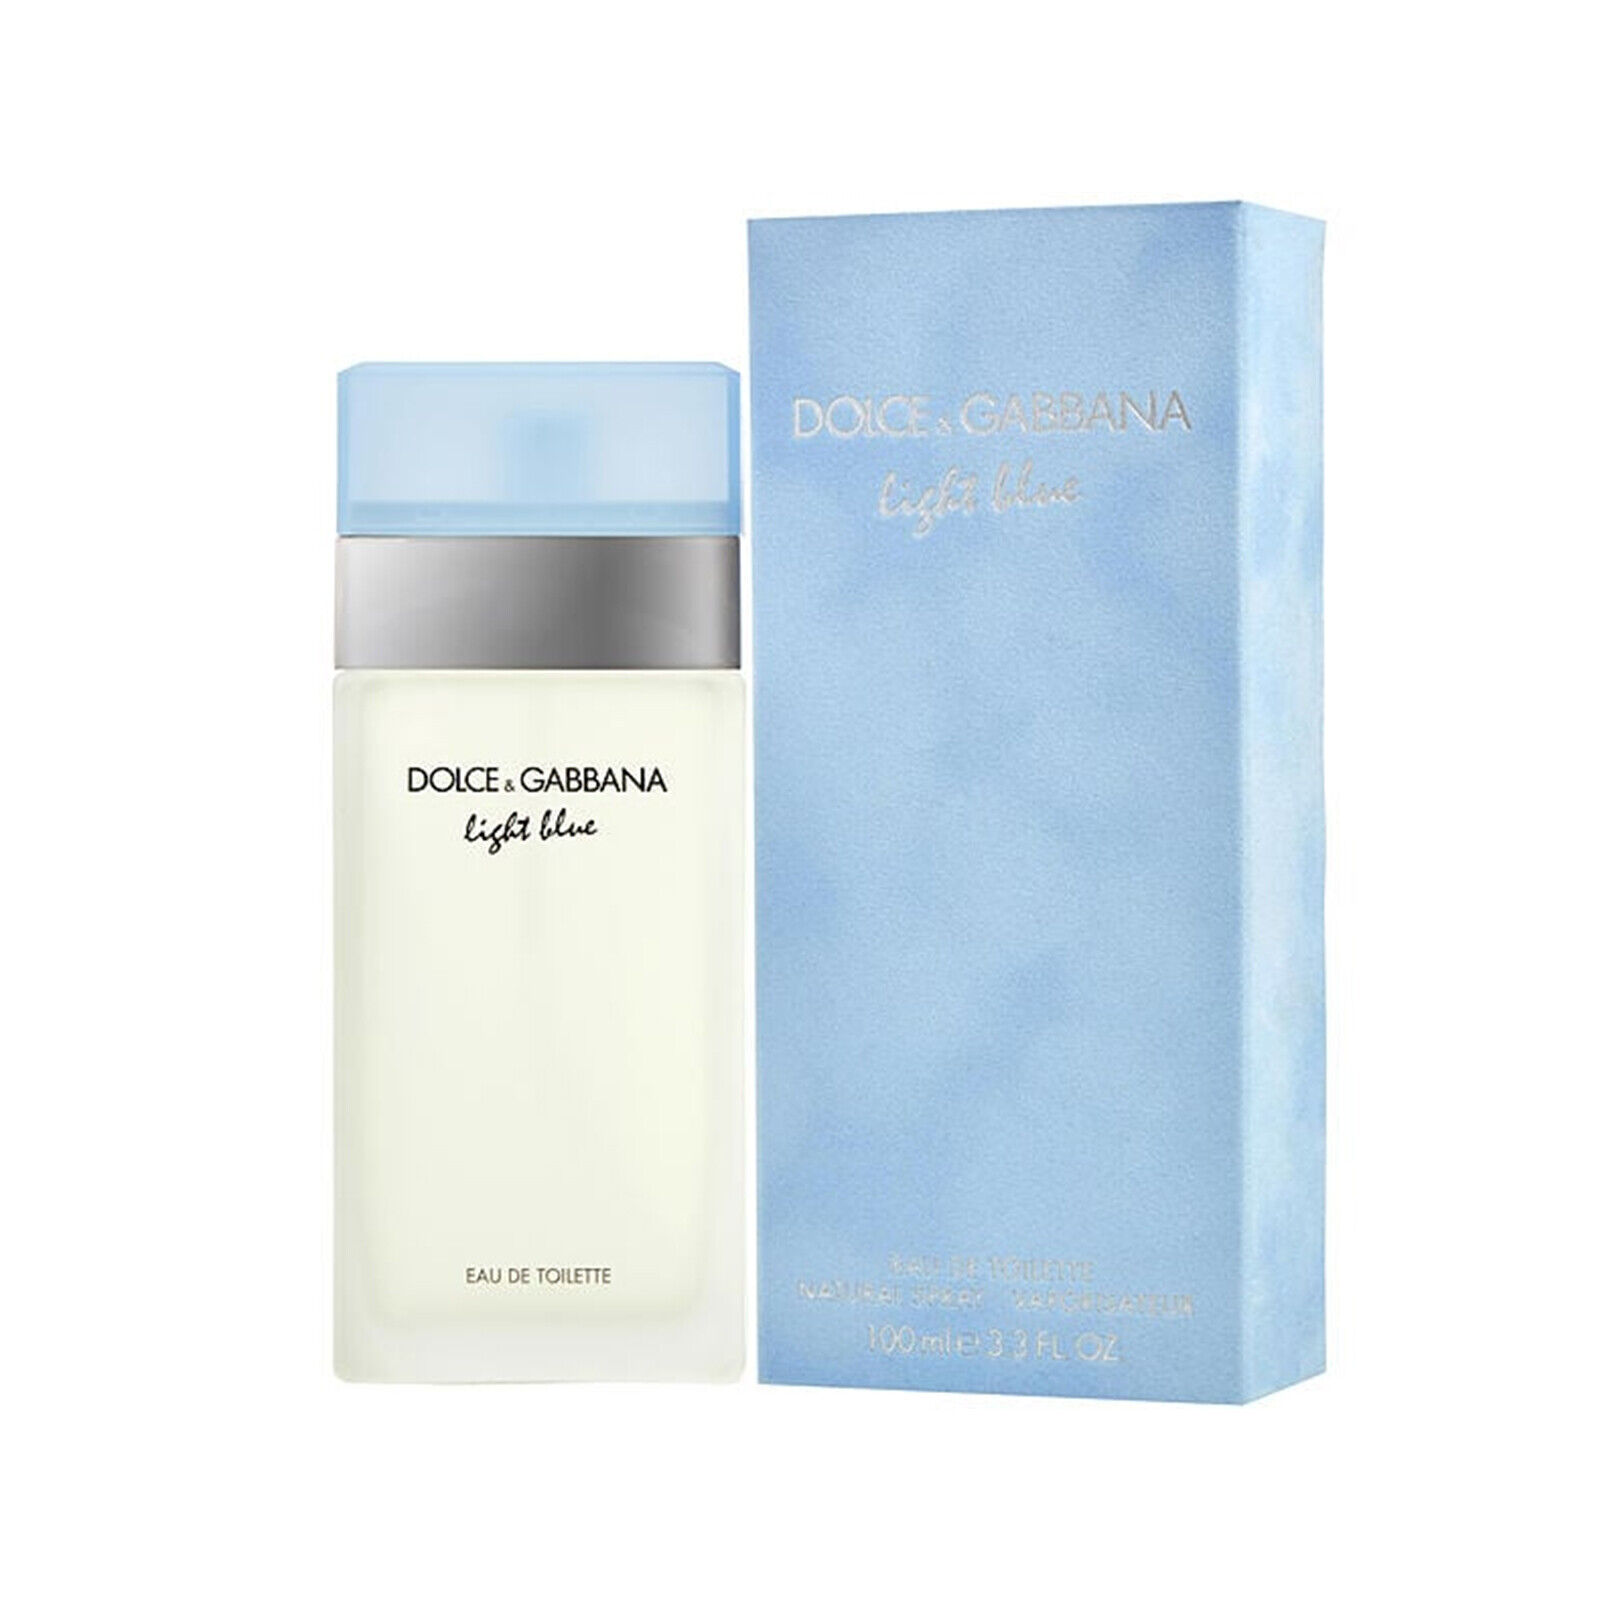 DG Light Blue Eau Intense 3.3 oz EDT EDP Perfume for Women New Sealed